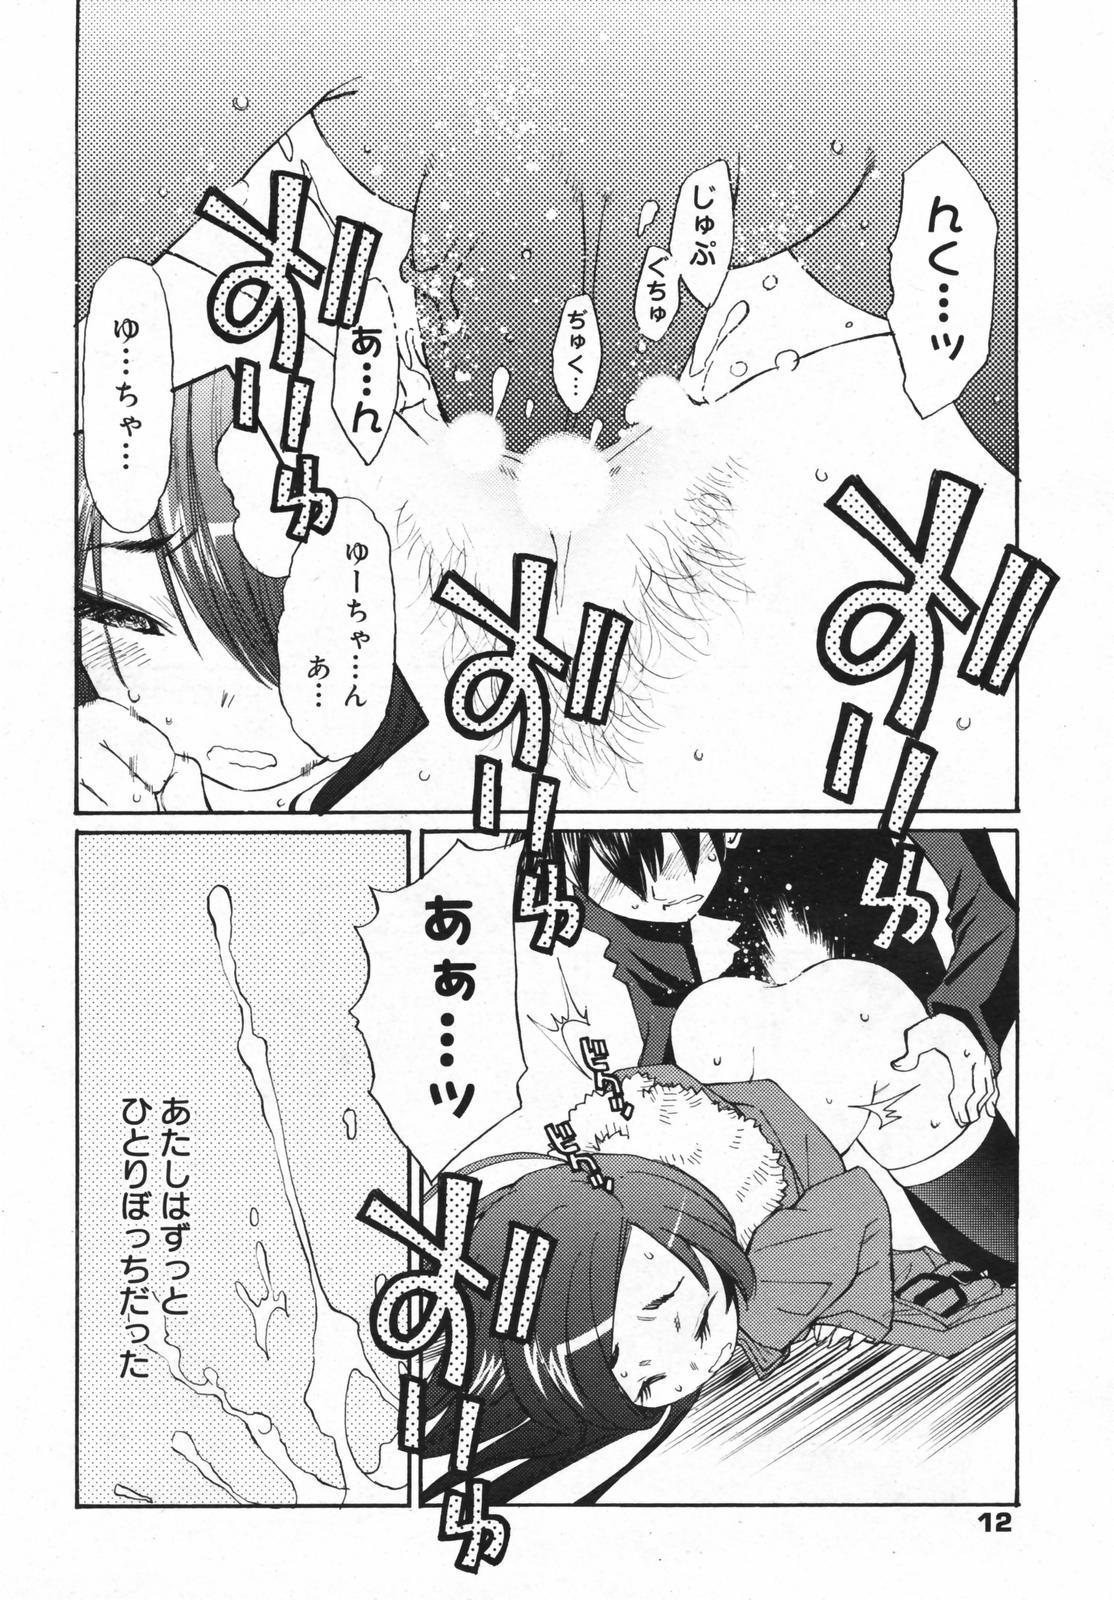 Bra Manga Bangaichi 2008-01 Puta - Page 12